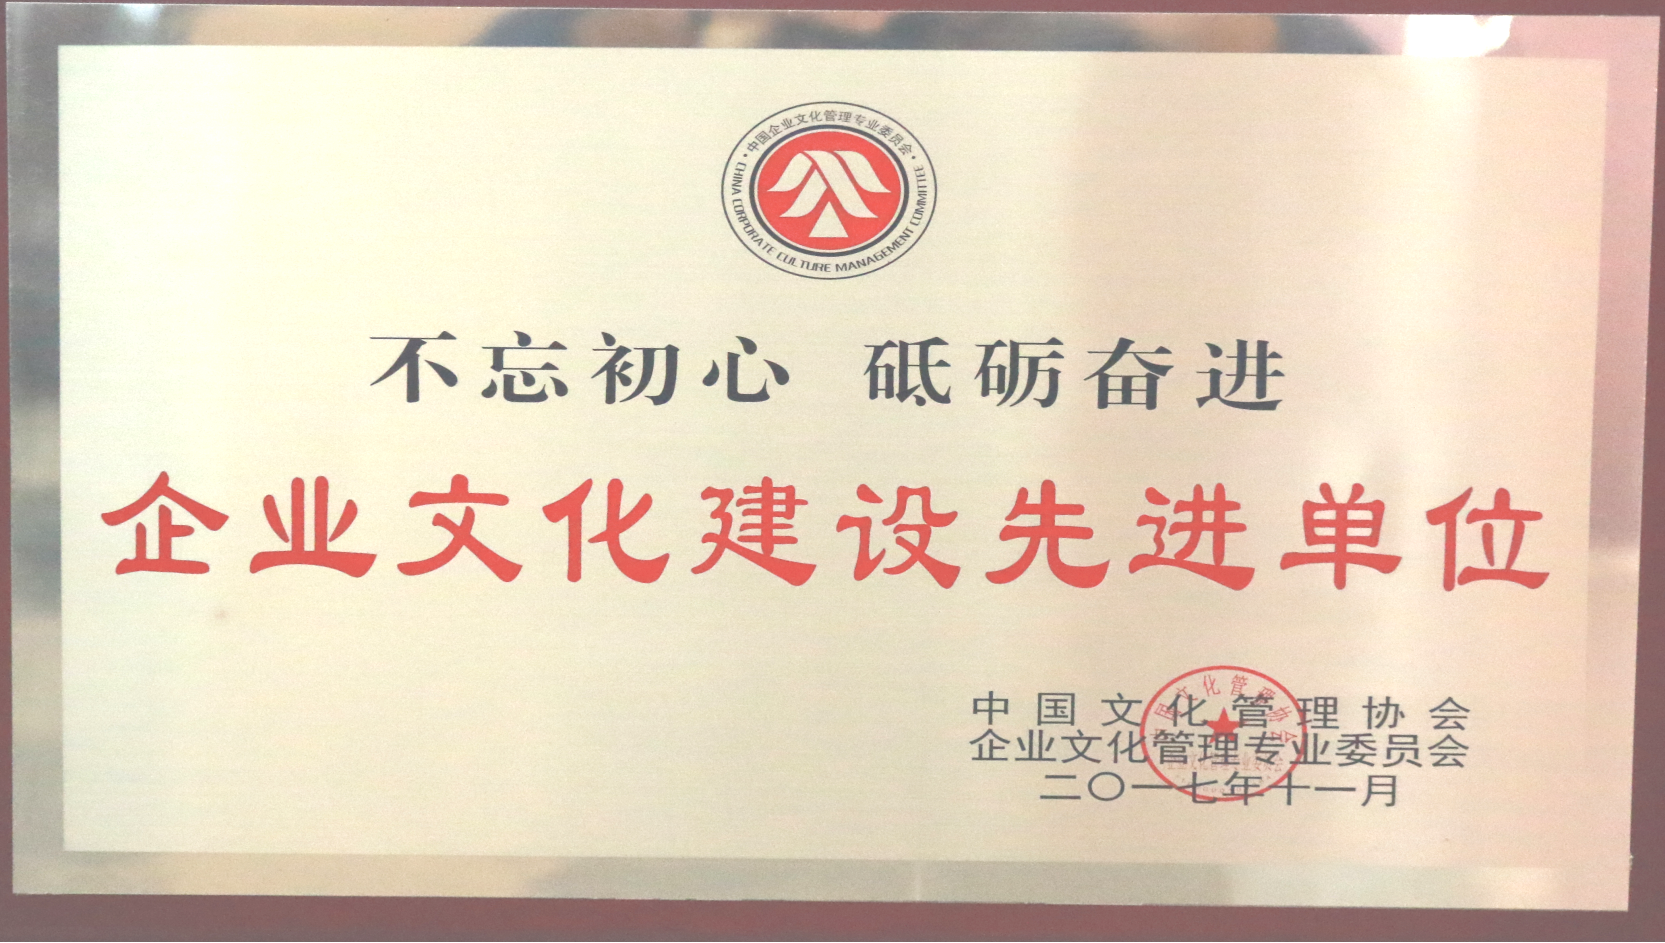 中国文化管理协会 企业文化建设先进单位.png